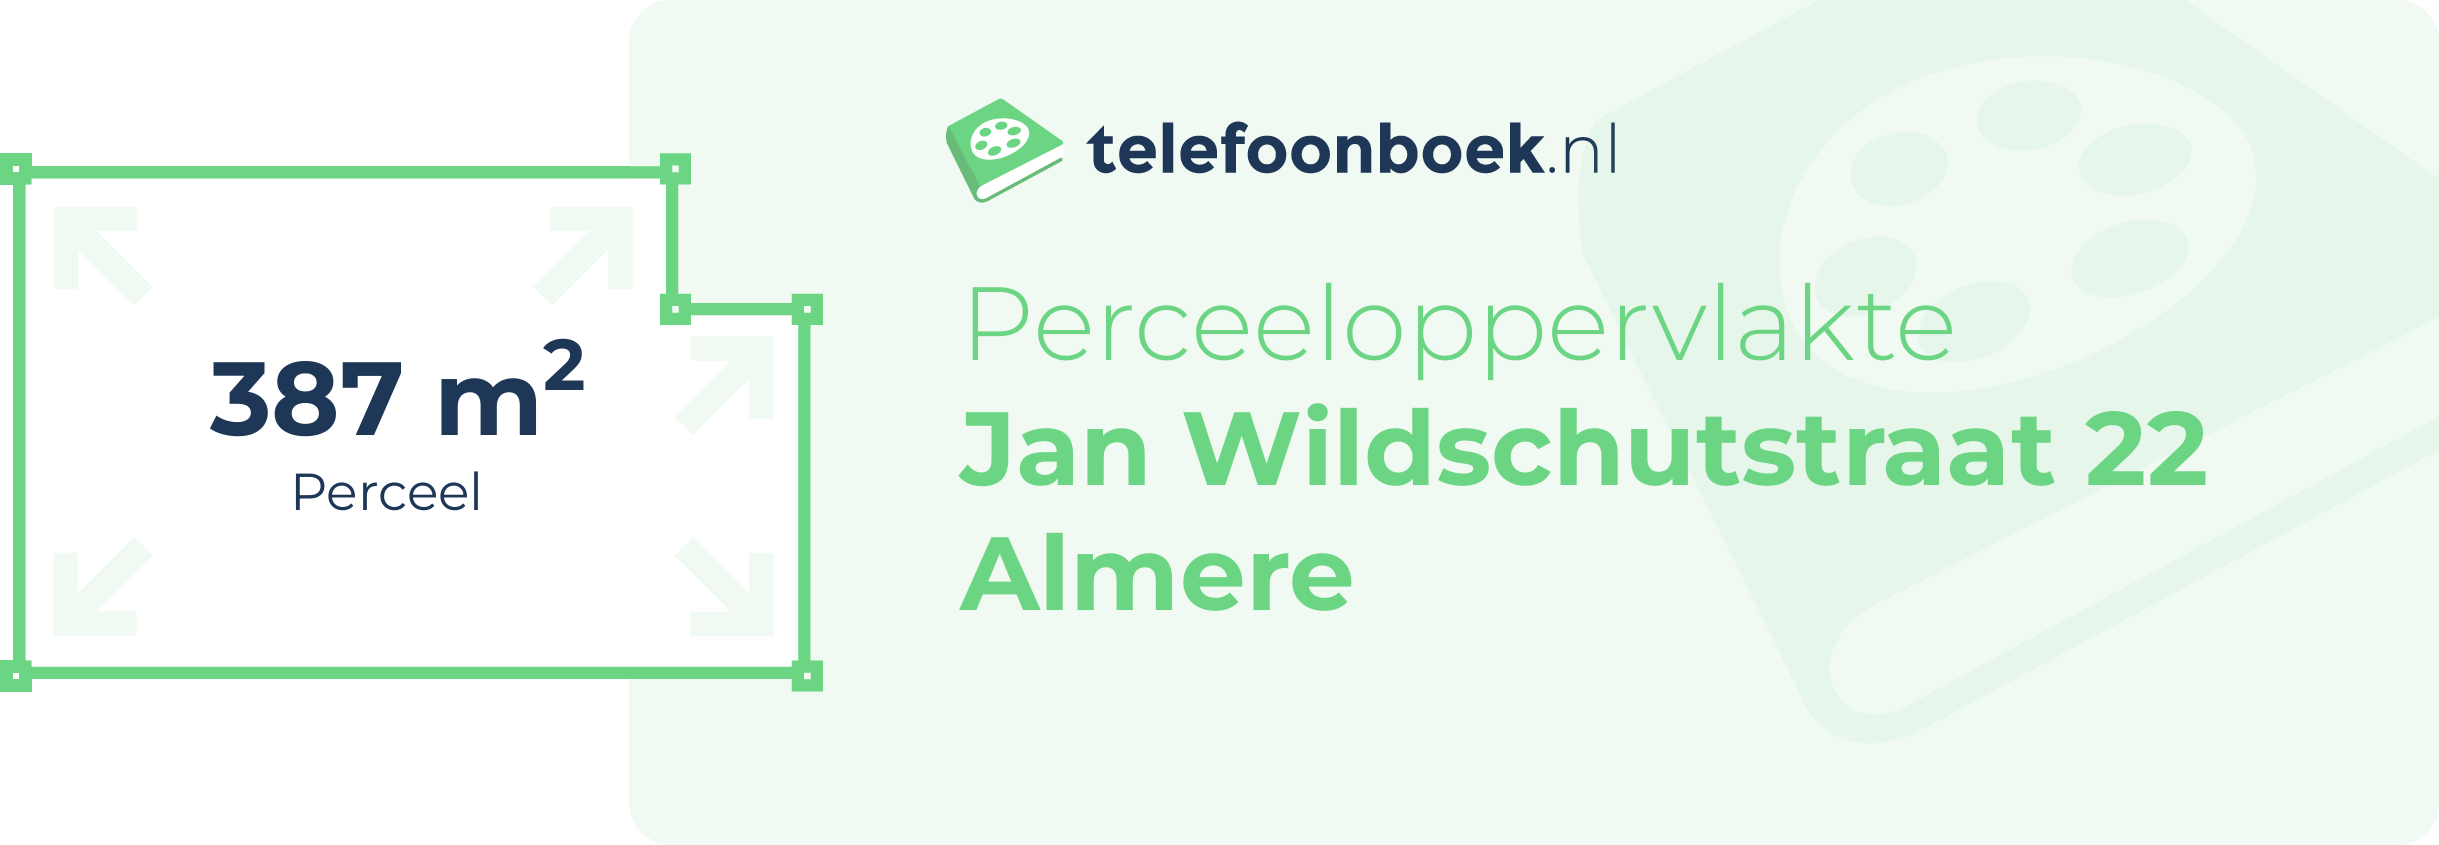 Perceeloppervlakte Jan Wildschutstraat 22 Almere